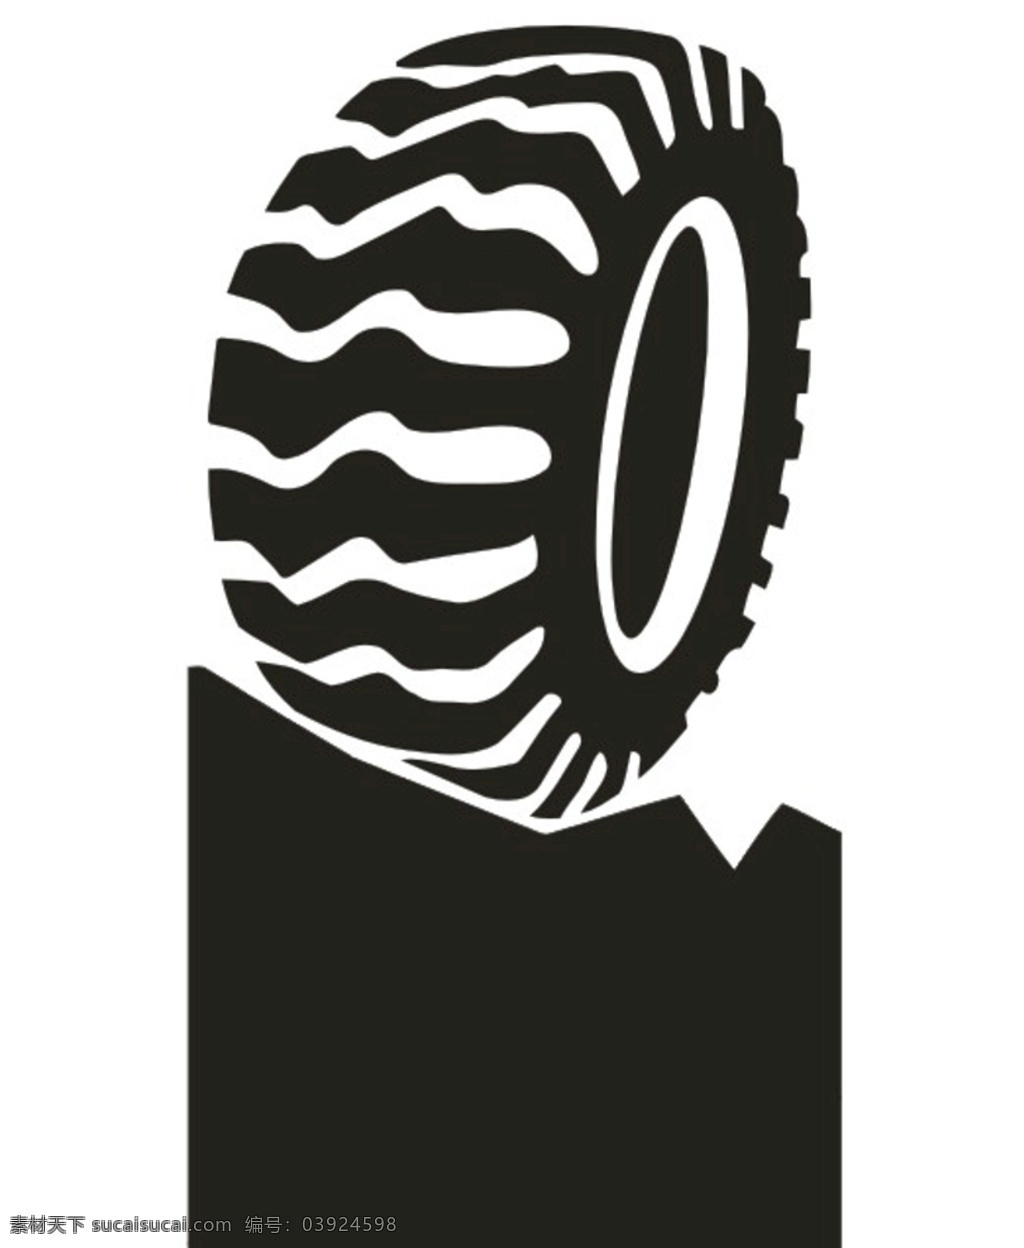 越野轮胎图片 黑色 图标 标志 标志图标 公共标识标志 小木屋 网页小图标